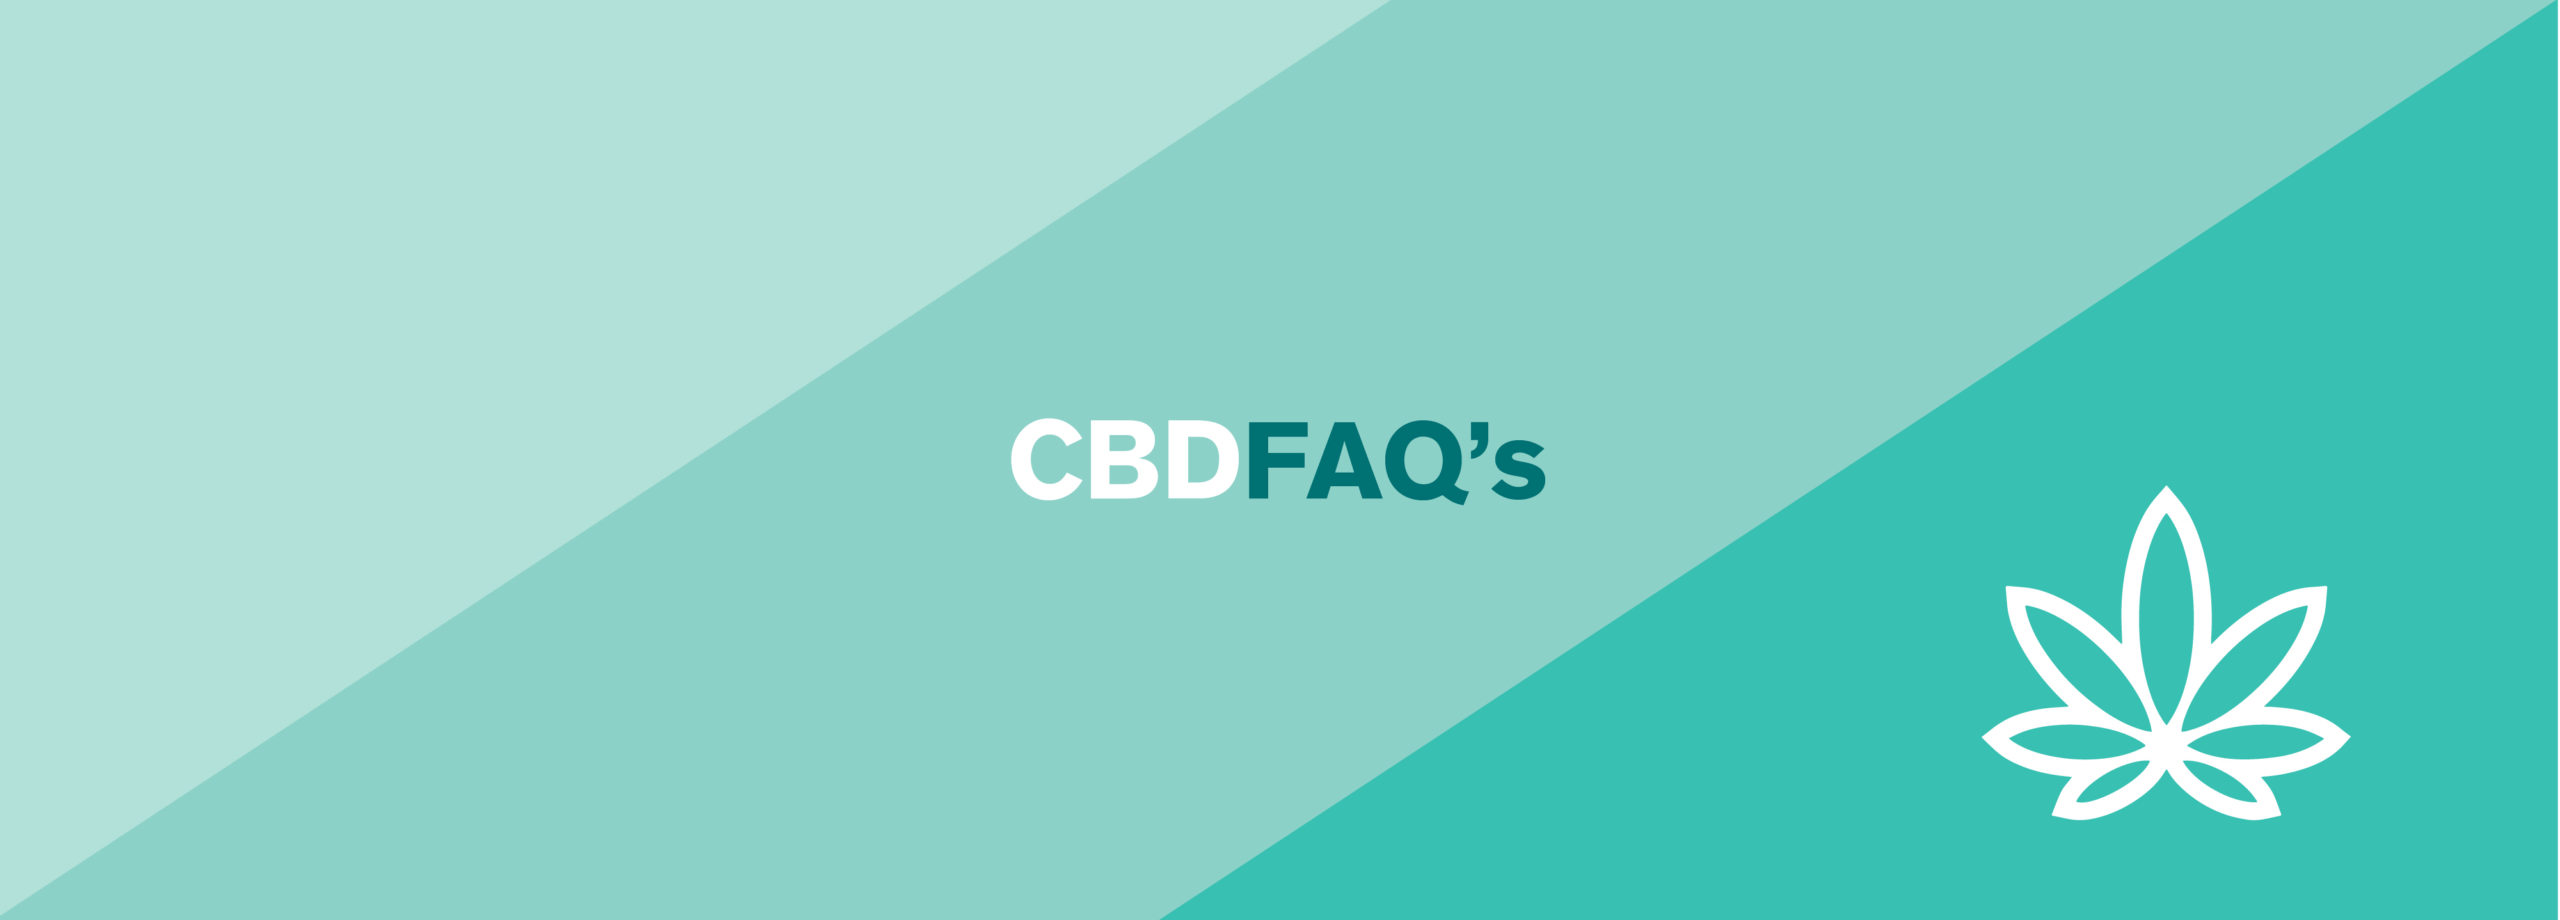 CBD FAQ's